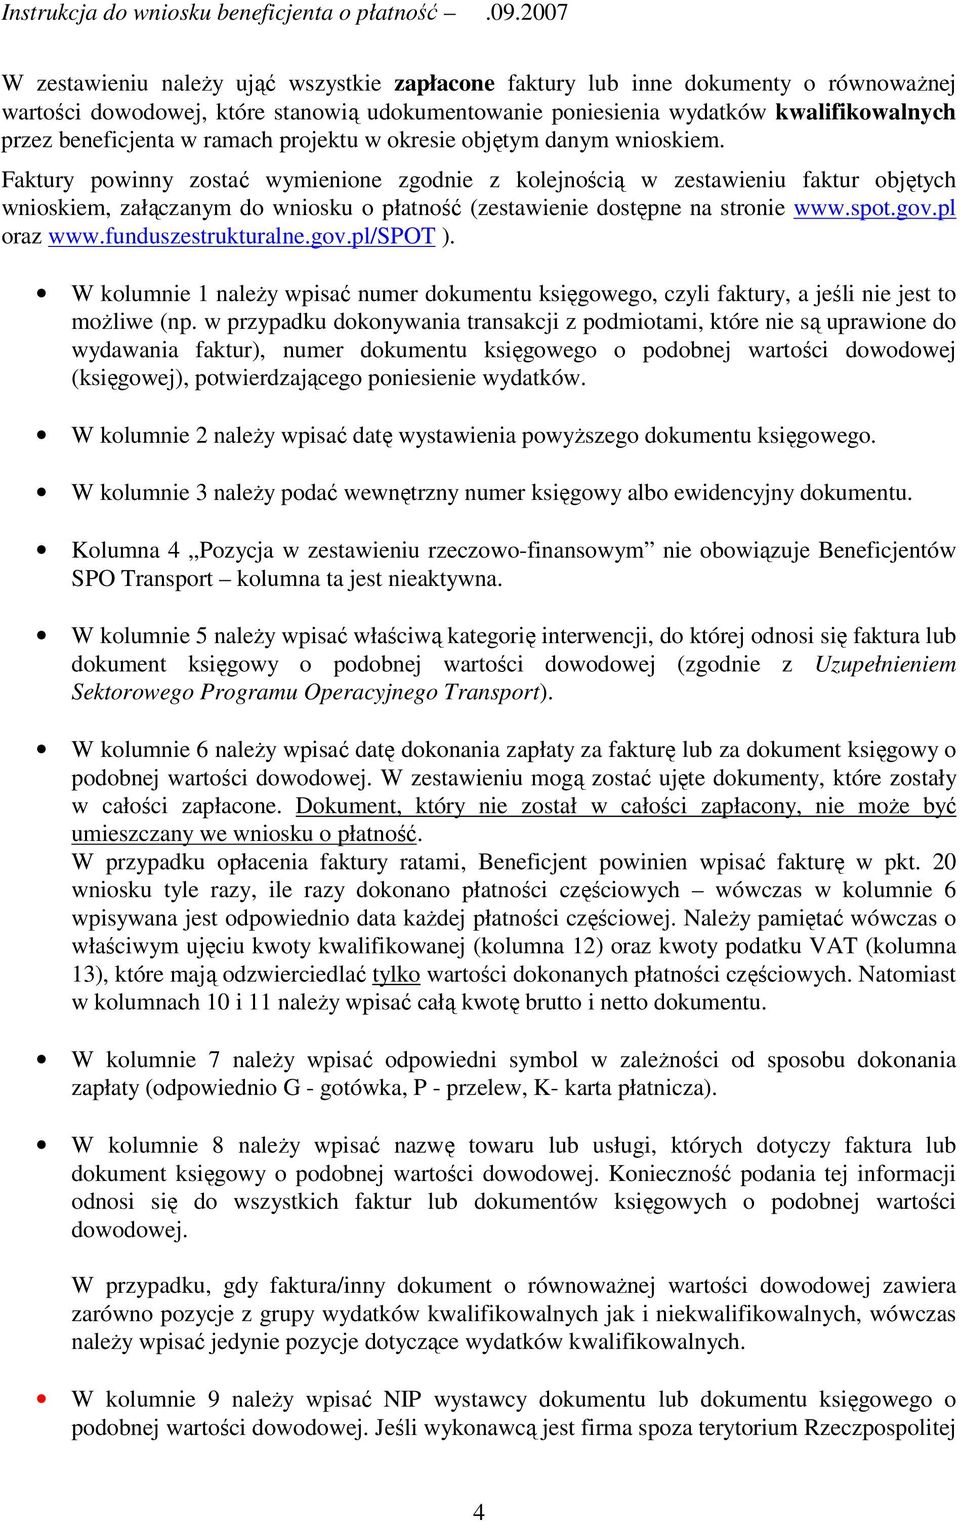 Faktury powinny zostać wymienione zgodnie z kolejnością w zestawieniu faktur objętych wnioskiem, załączanym do wniosku o płatność (zestawienie dostępne na stronie www.spot.gov.pl oraz www.